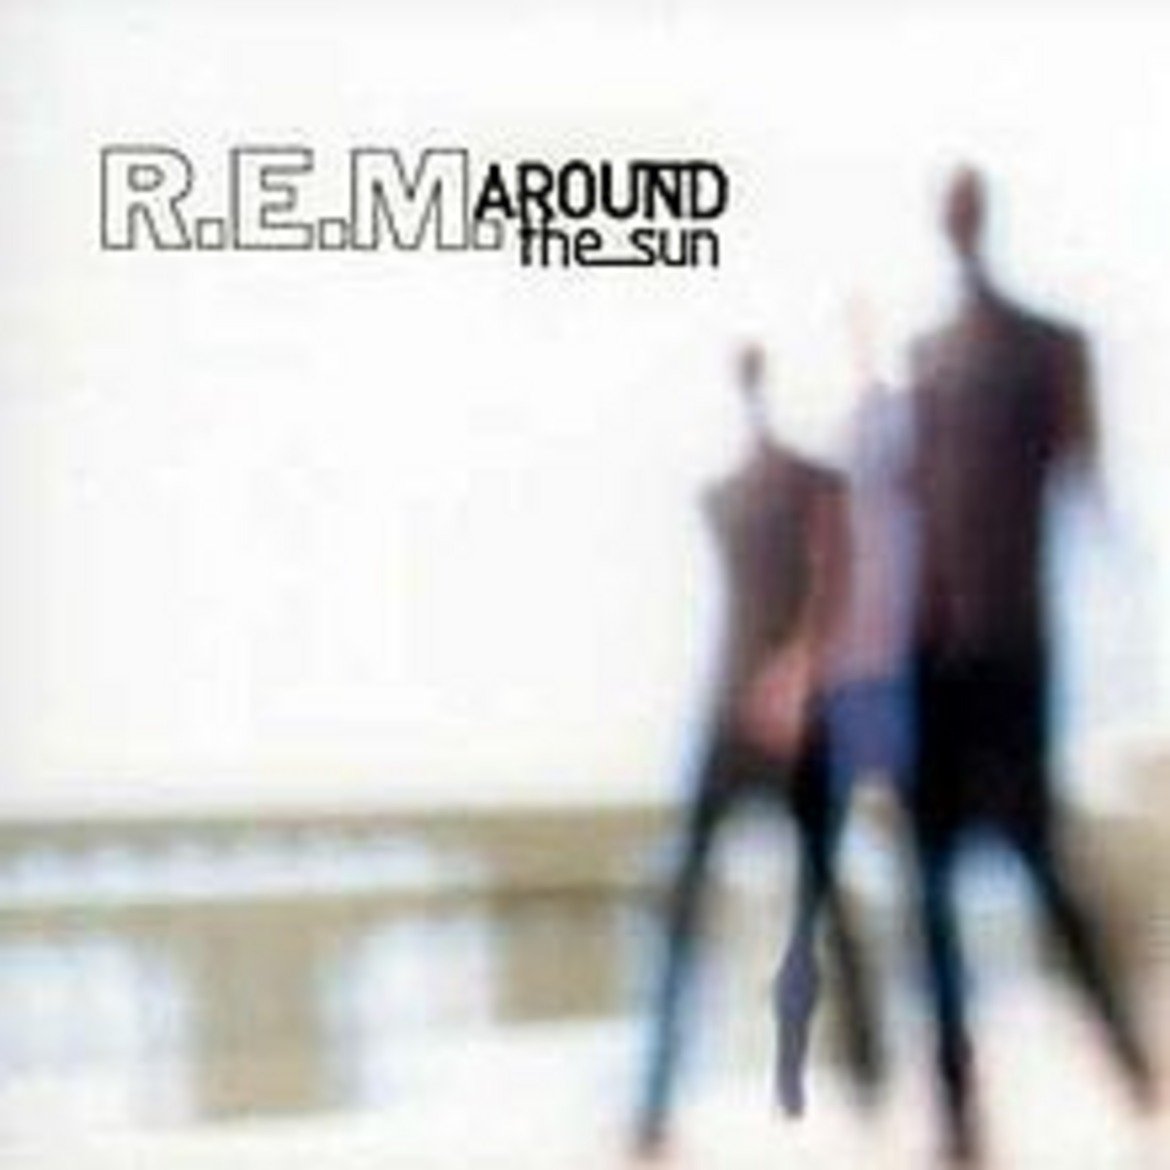  R.E.M. - Around the Sun 

Това е тринадесетият студиен албум на бандата, но се оказва първият, който не успява да влезе в топ 10 в класацията на Billboard. Музикалните критици са разколебани в мненията си, а феновете са на още по-противоположни позиции за албума. 

Китаристът Питър Бък казва "Изглеждахме като една от онези банди, които са прекарали месеци в студиото и най-накрая не сме направили абсолютно нищо". Той казва, че буквално не може да слуша някои от песните в албума.